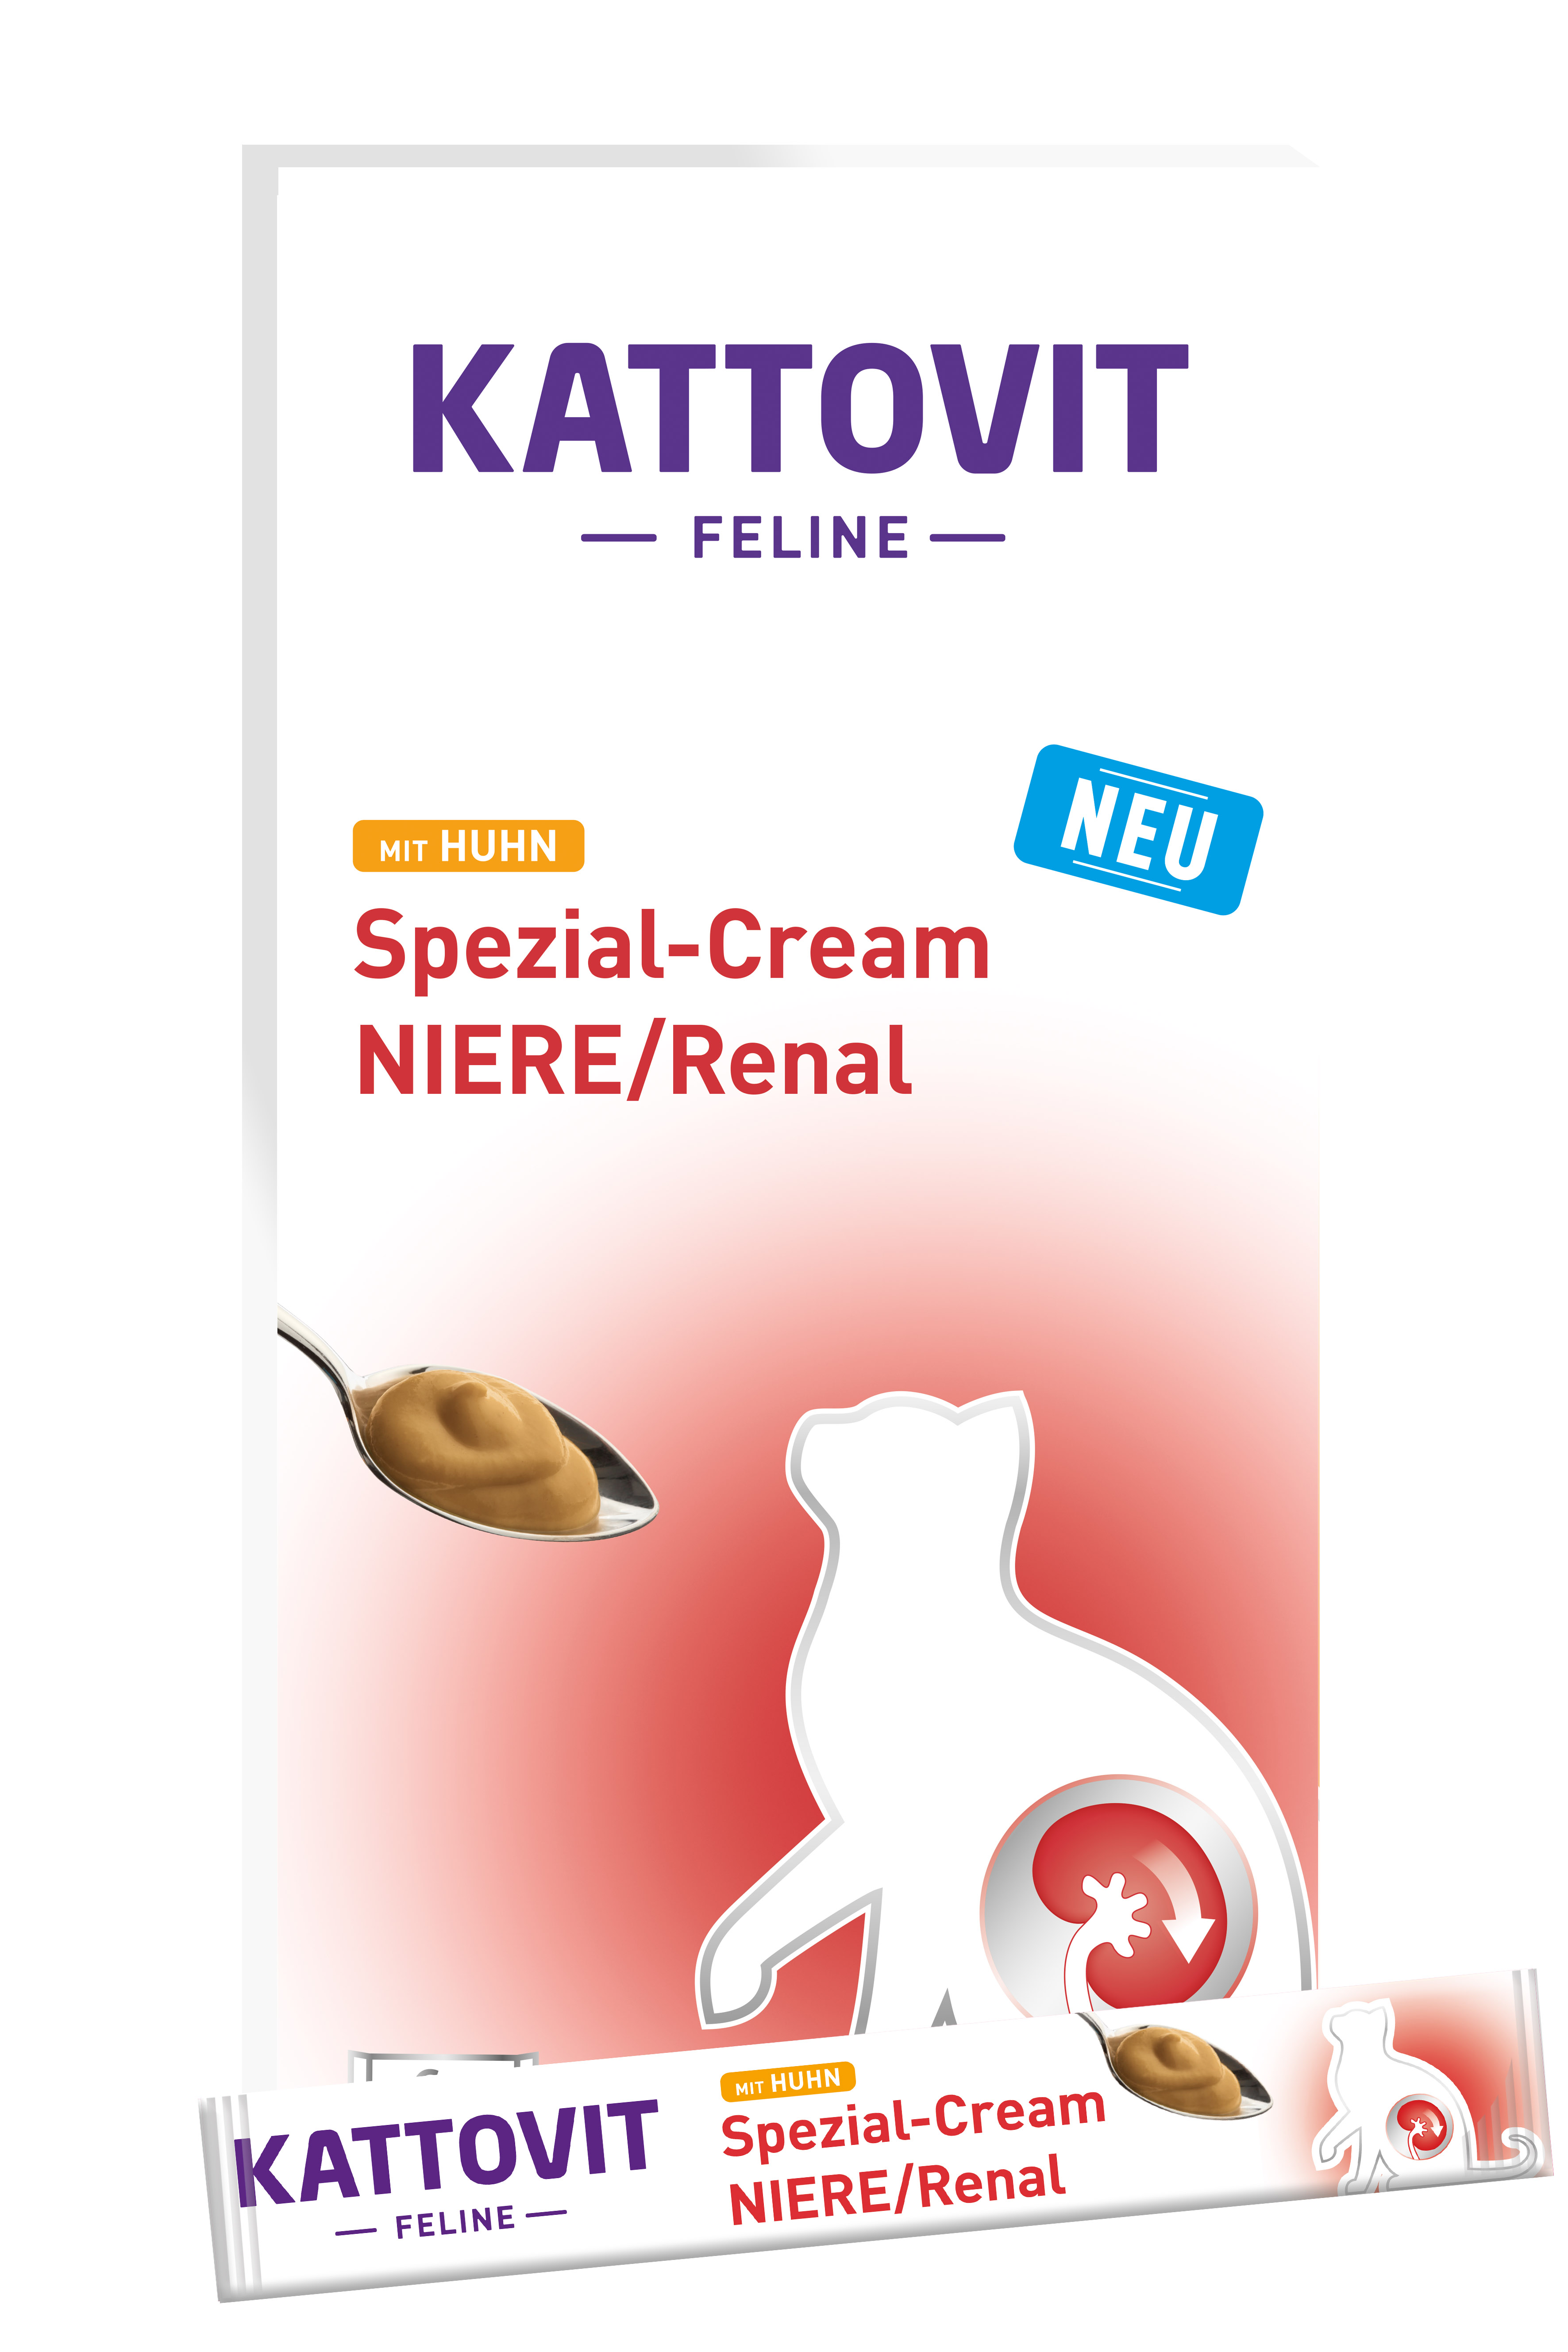 Kattovit NIERE/Renal mit Huhn Spezial-Cream 6x15g